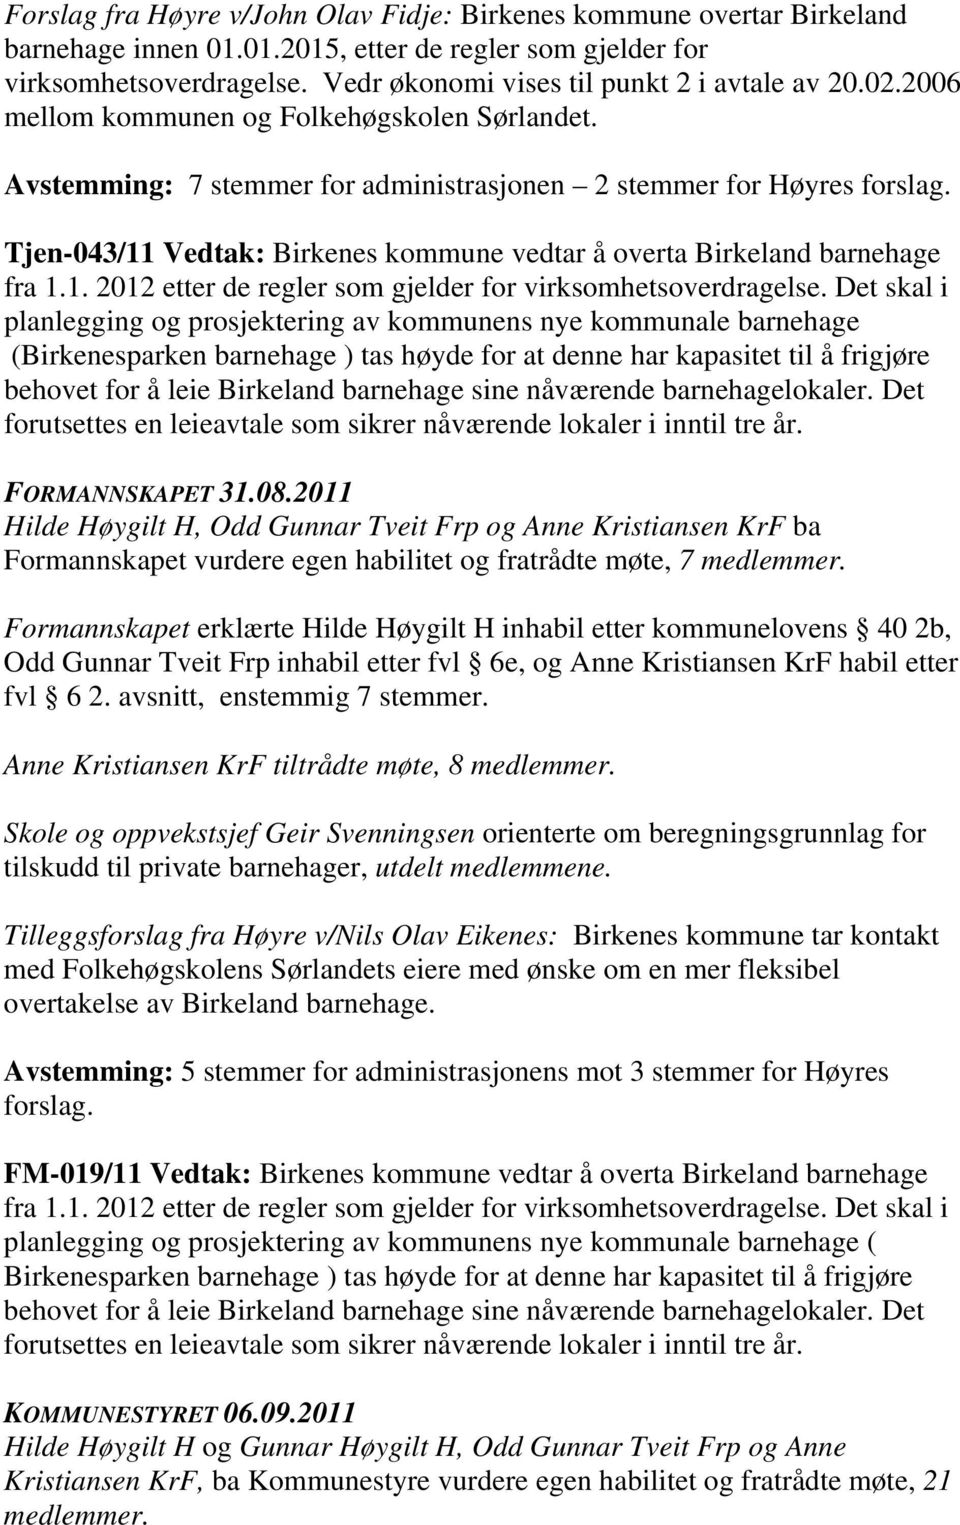 Tjen-043/11 Vedtak: Birkenes kommune vedtar å overta Birkeland barnehage fra 1.1. 2012 etter de regler som gjelder for virksomhetsoverdragelse.